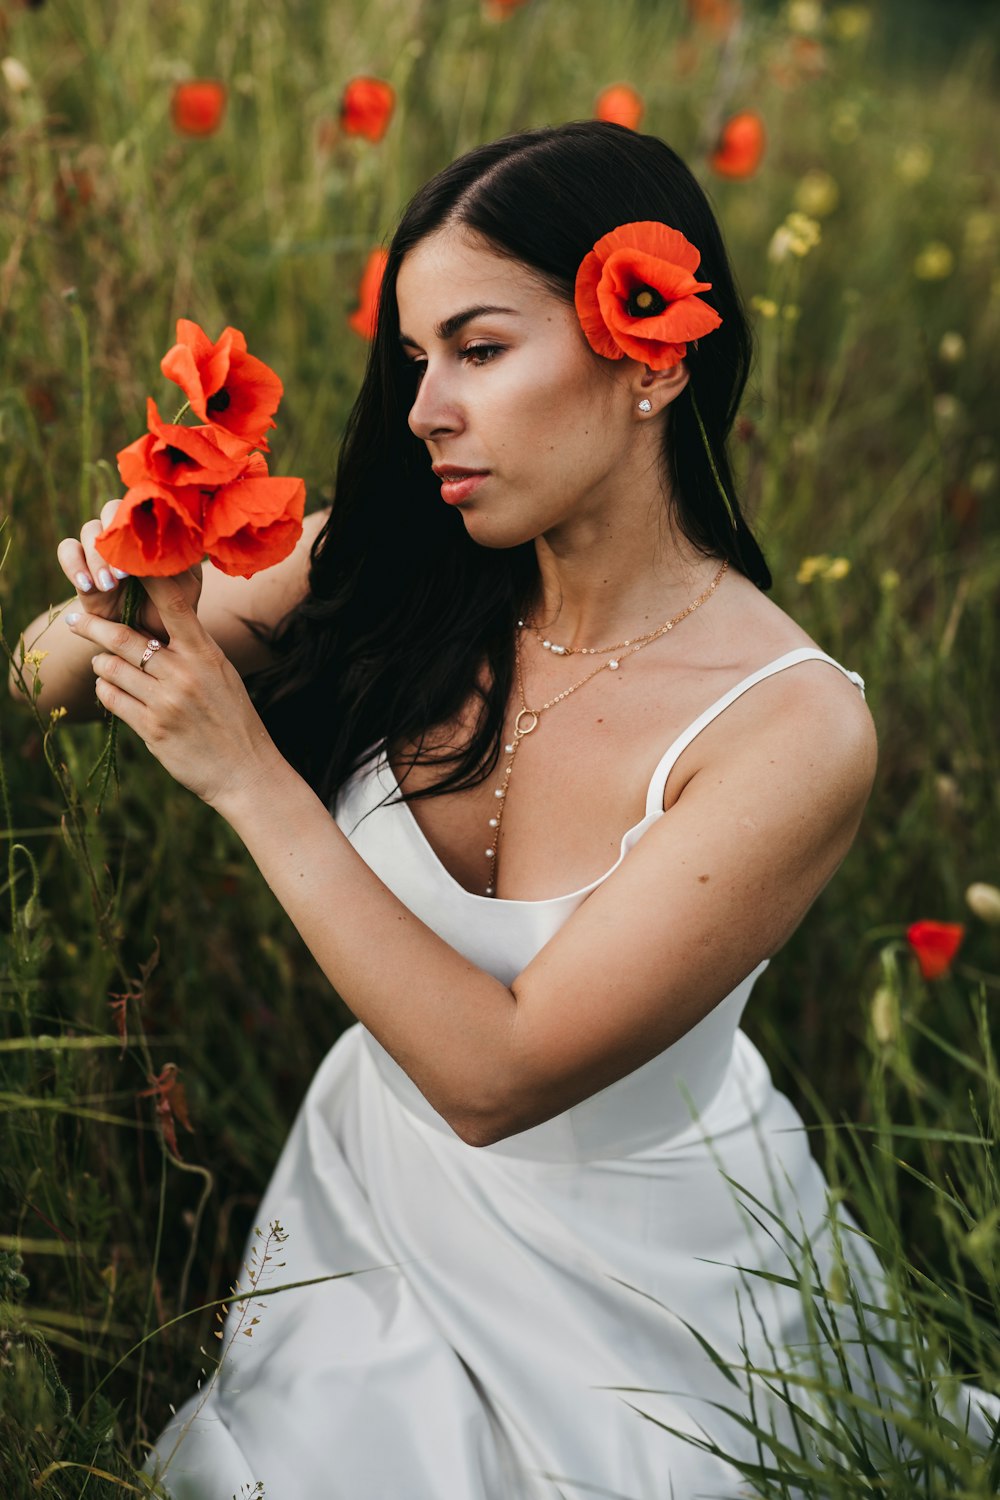 Una donna in un vestito bianco che tiene i fiori